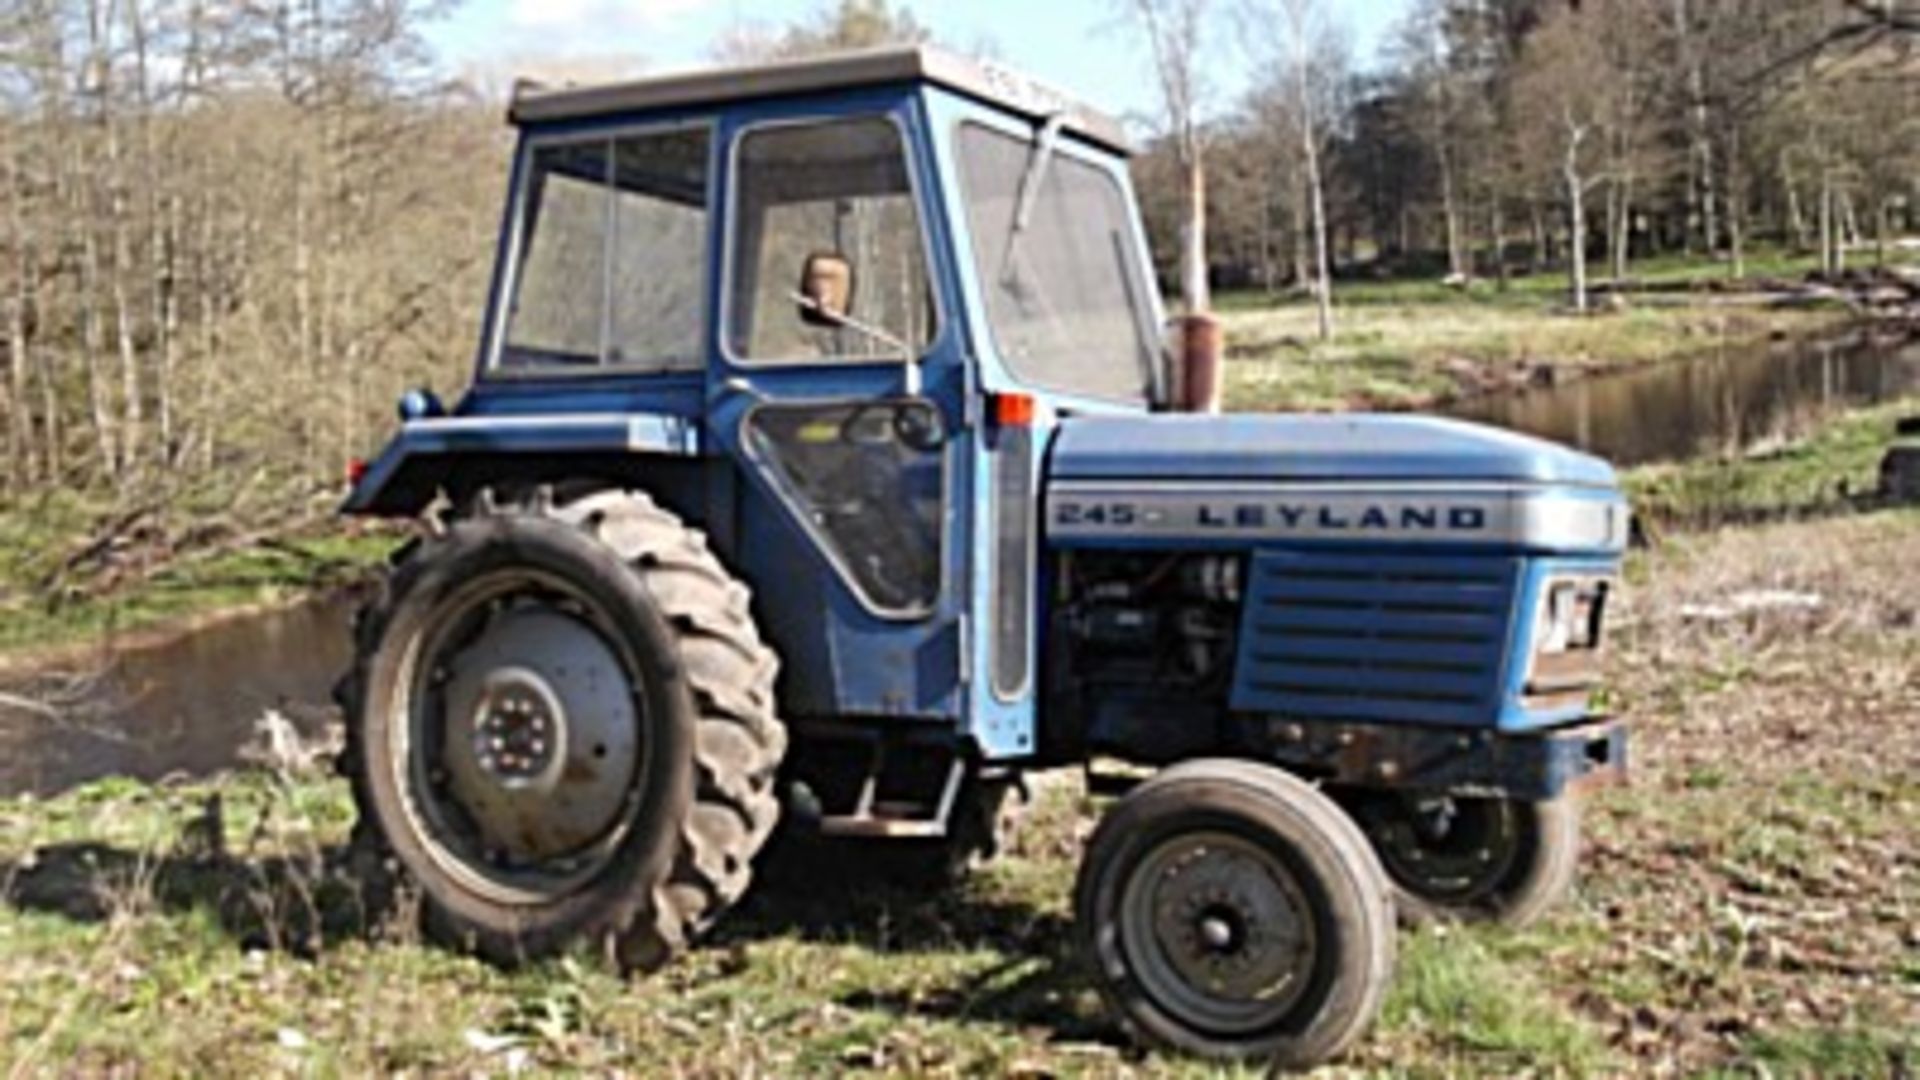 LEYLAND Diesel